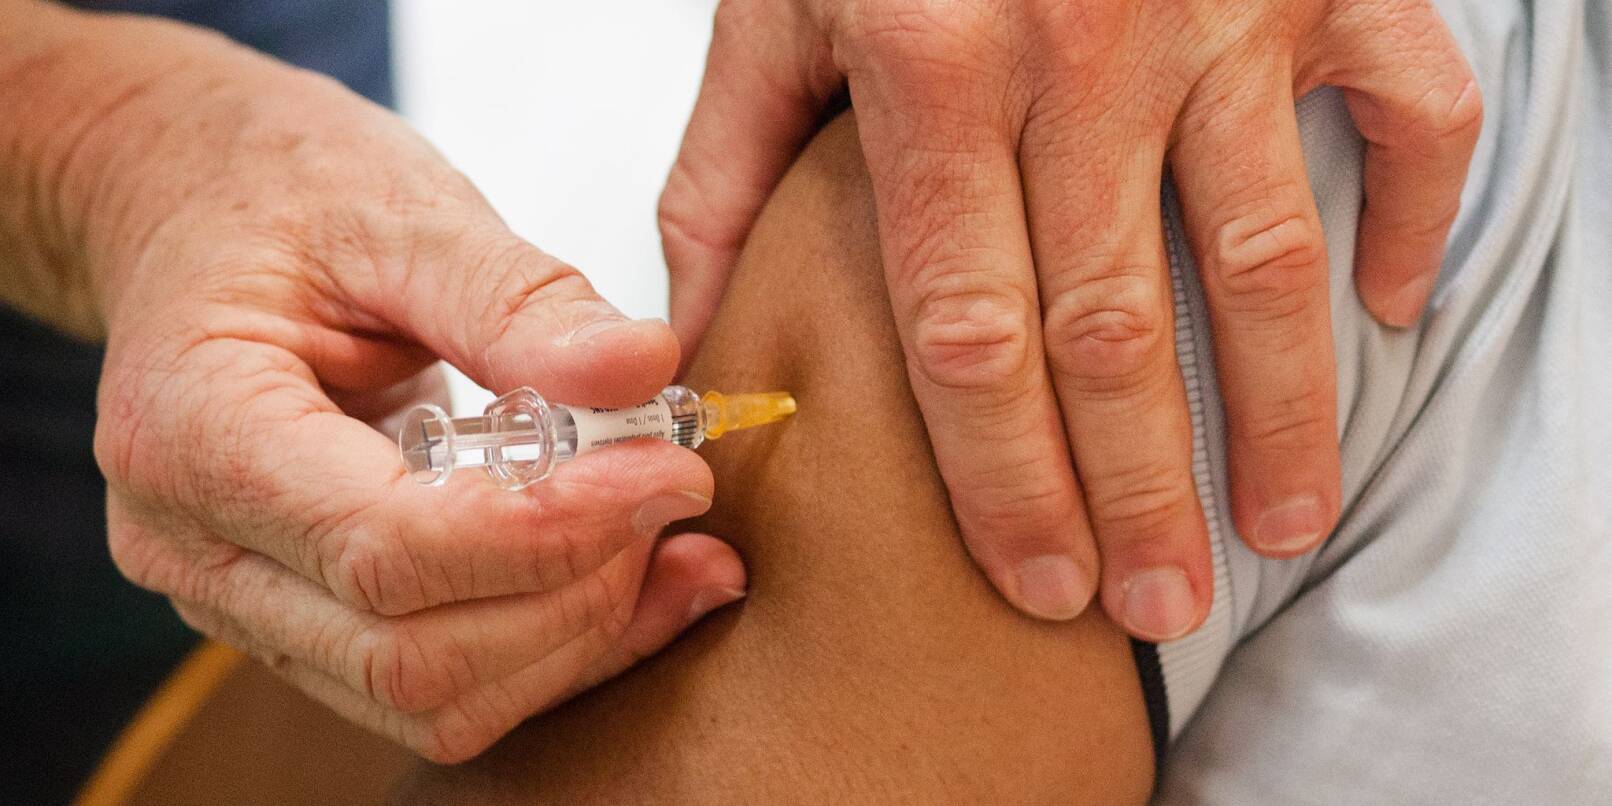 Ein Mann erhält eine Impfung gegen Grippe, Tetanus, Diphtherie, Keuchhusten (Pertussis) und Polio.